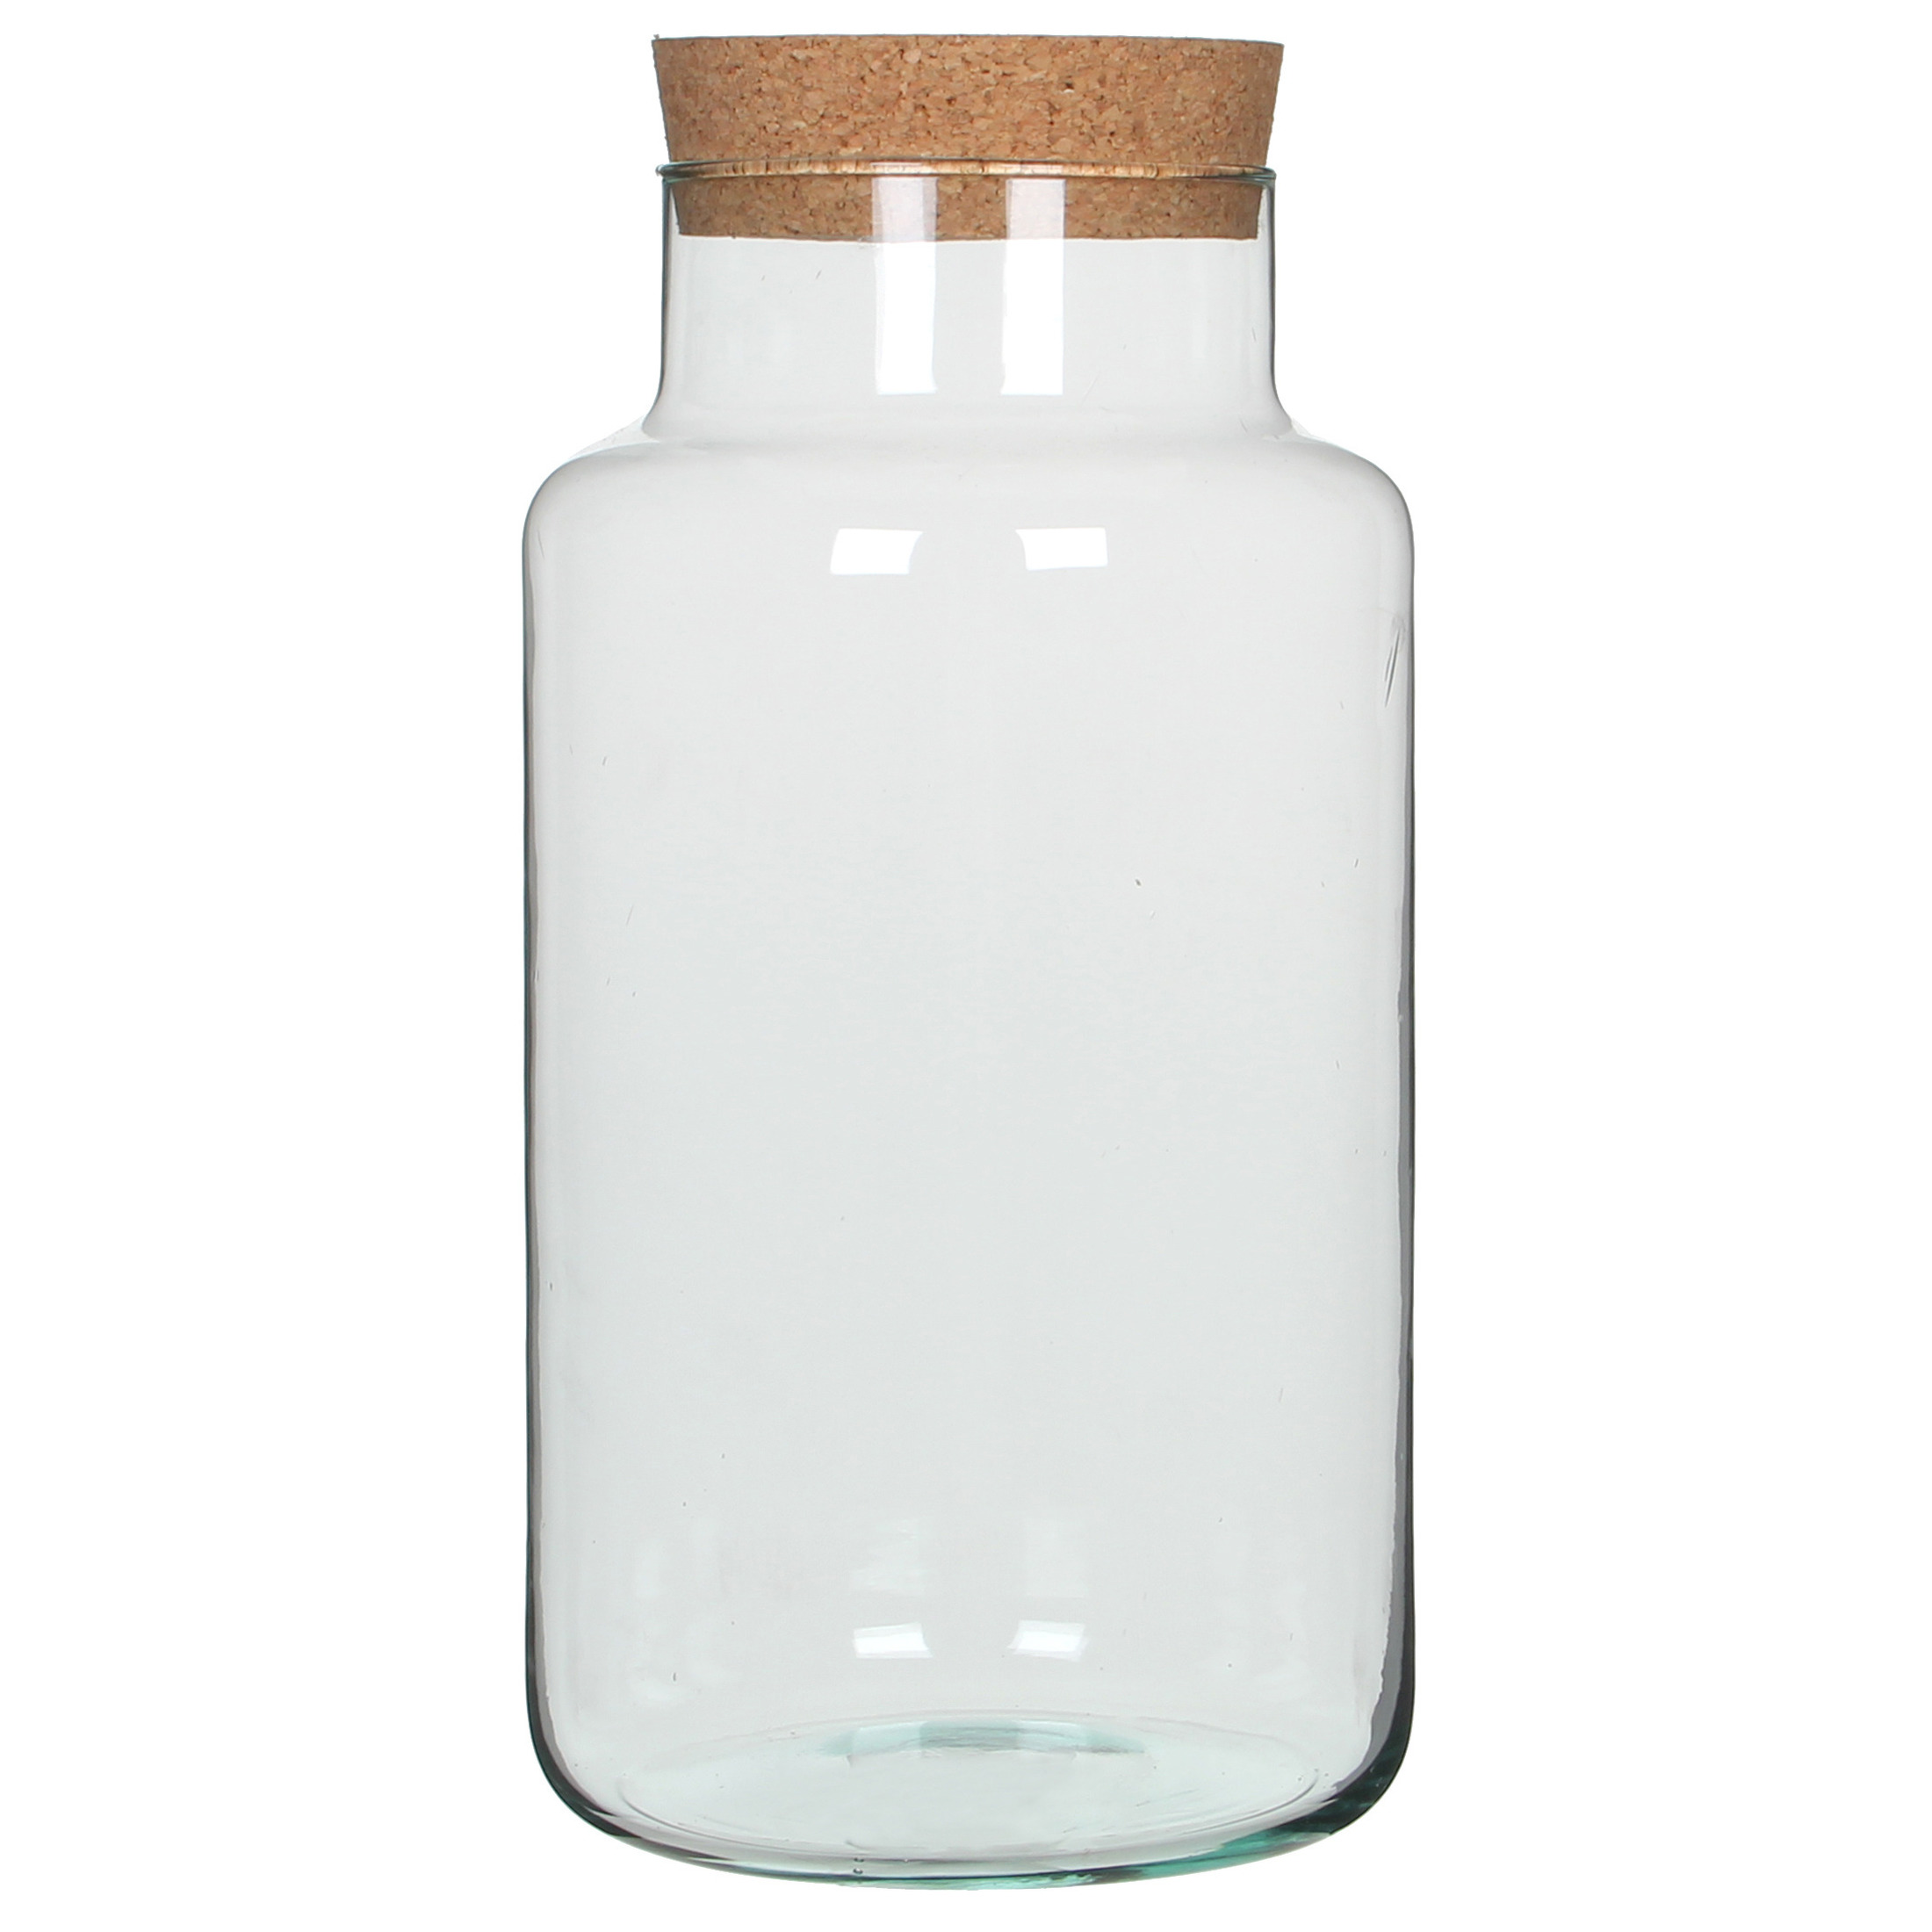 Glazen voorraadpot-snoeppot transparant met deksel H36 cm x D19 cm